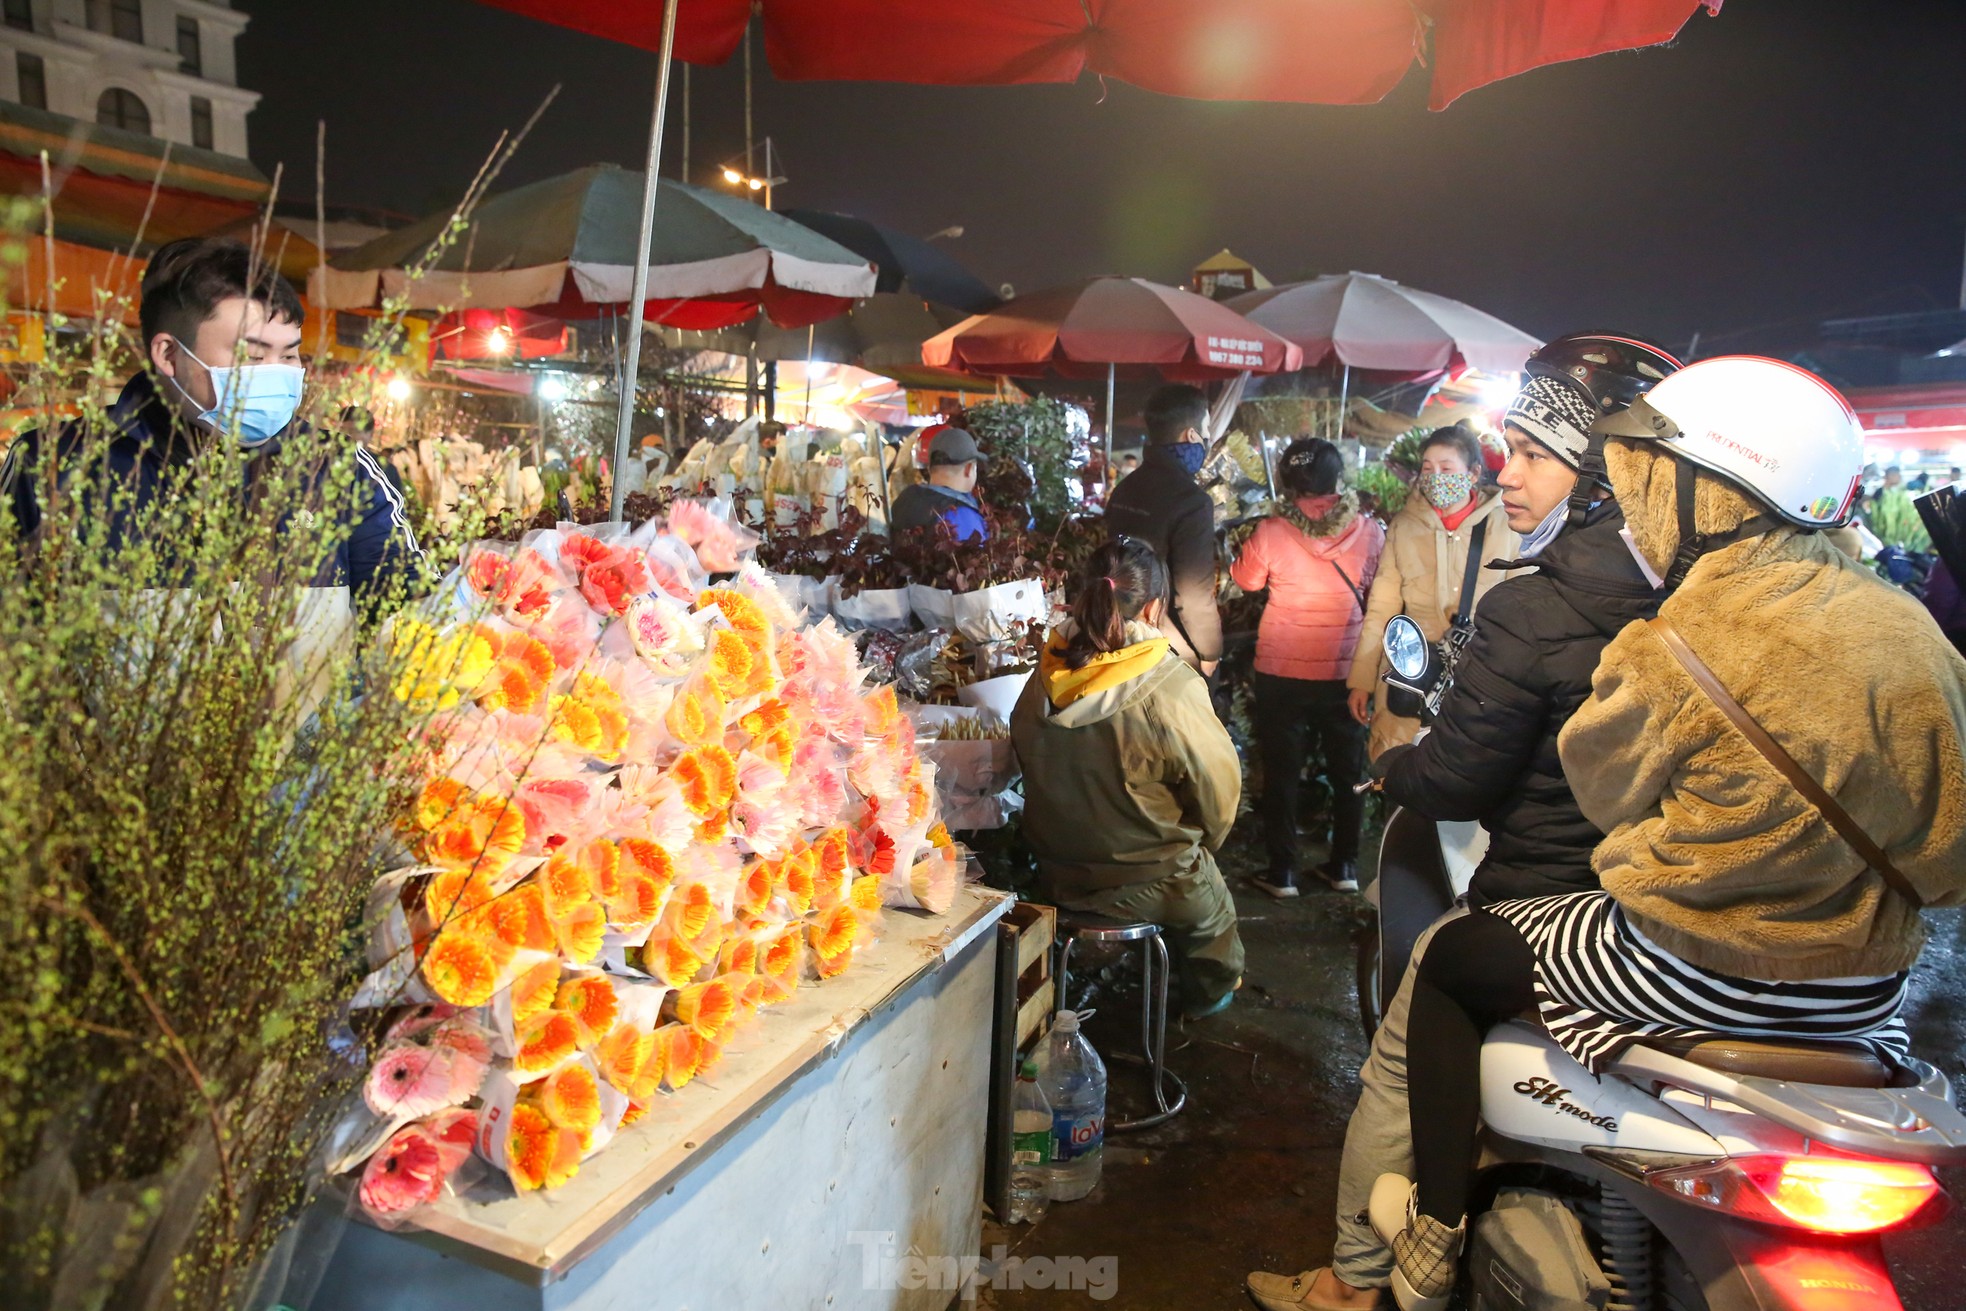 Đêm không ngủ ở chợ hoa lớn nhất Hà Nội giáp Tết - Ảnh 7.